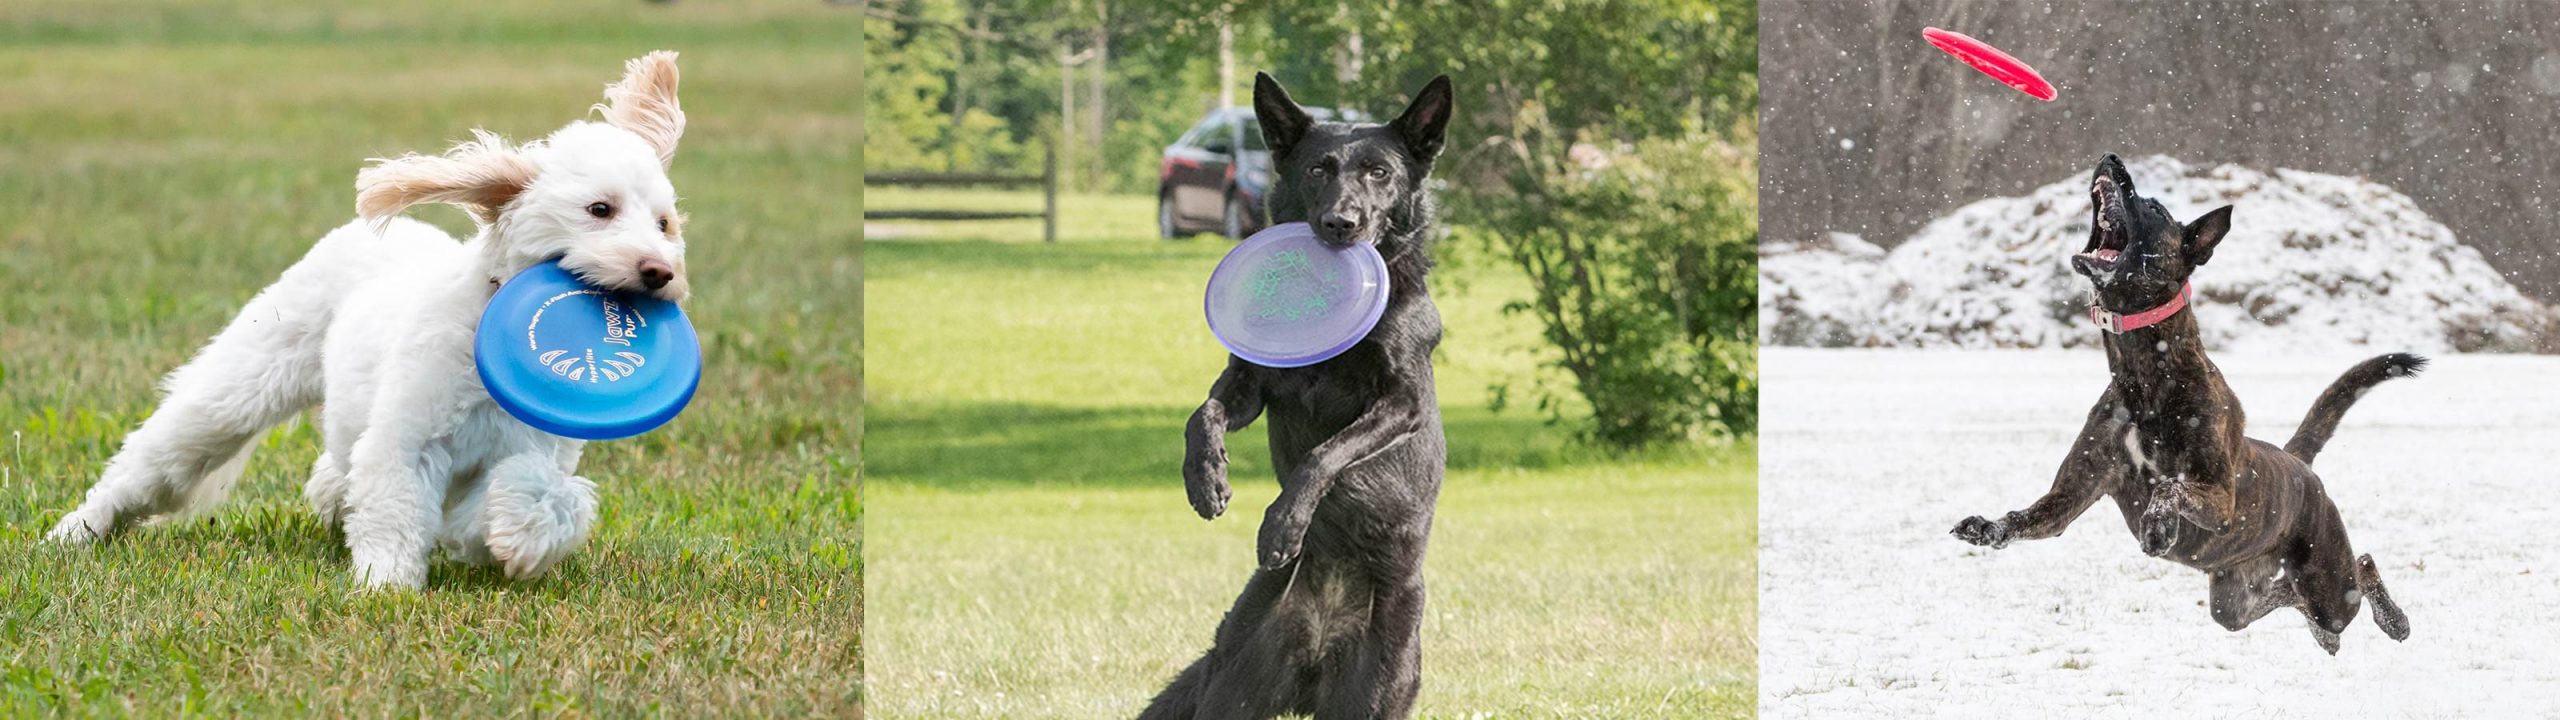 Disque pour chien de compétition Jawz, le plus dur au monde, le meilleur  vol, résistant à la perforation, frisbee pour chien 